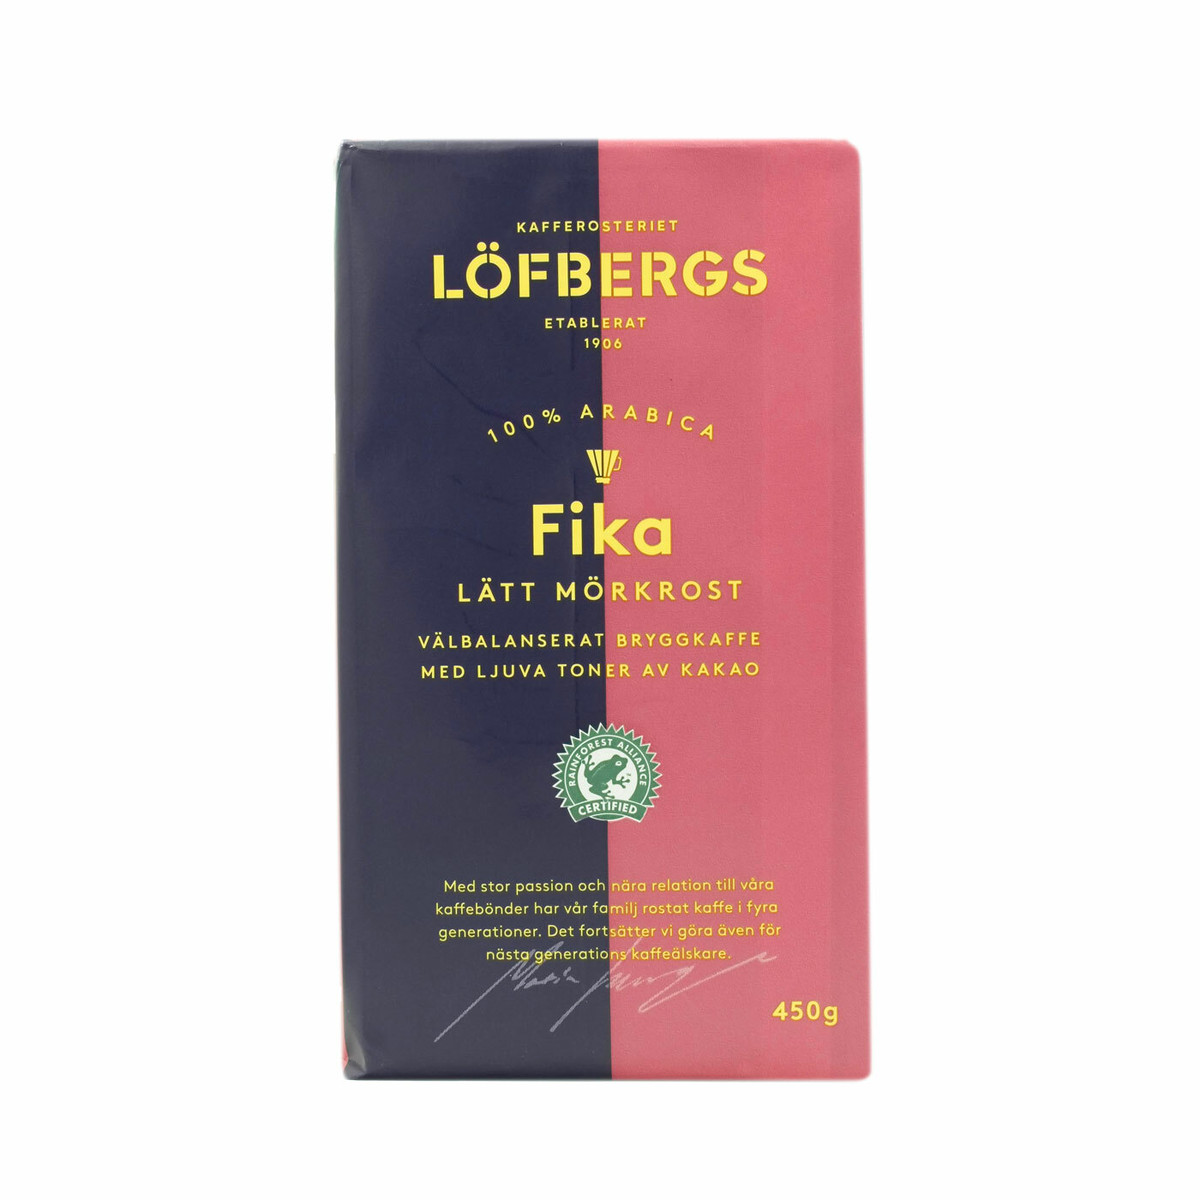 Fika 450g コーヒー粉 中深煎り Lofbergs Fikahuset フィーカフセット スウェーデンの紅茶とコーヒーの販売